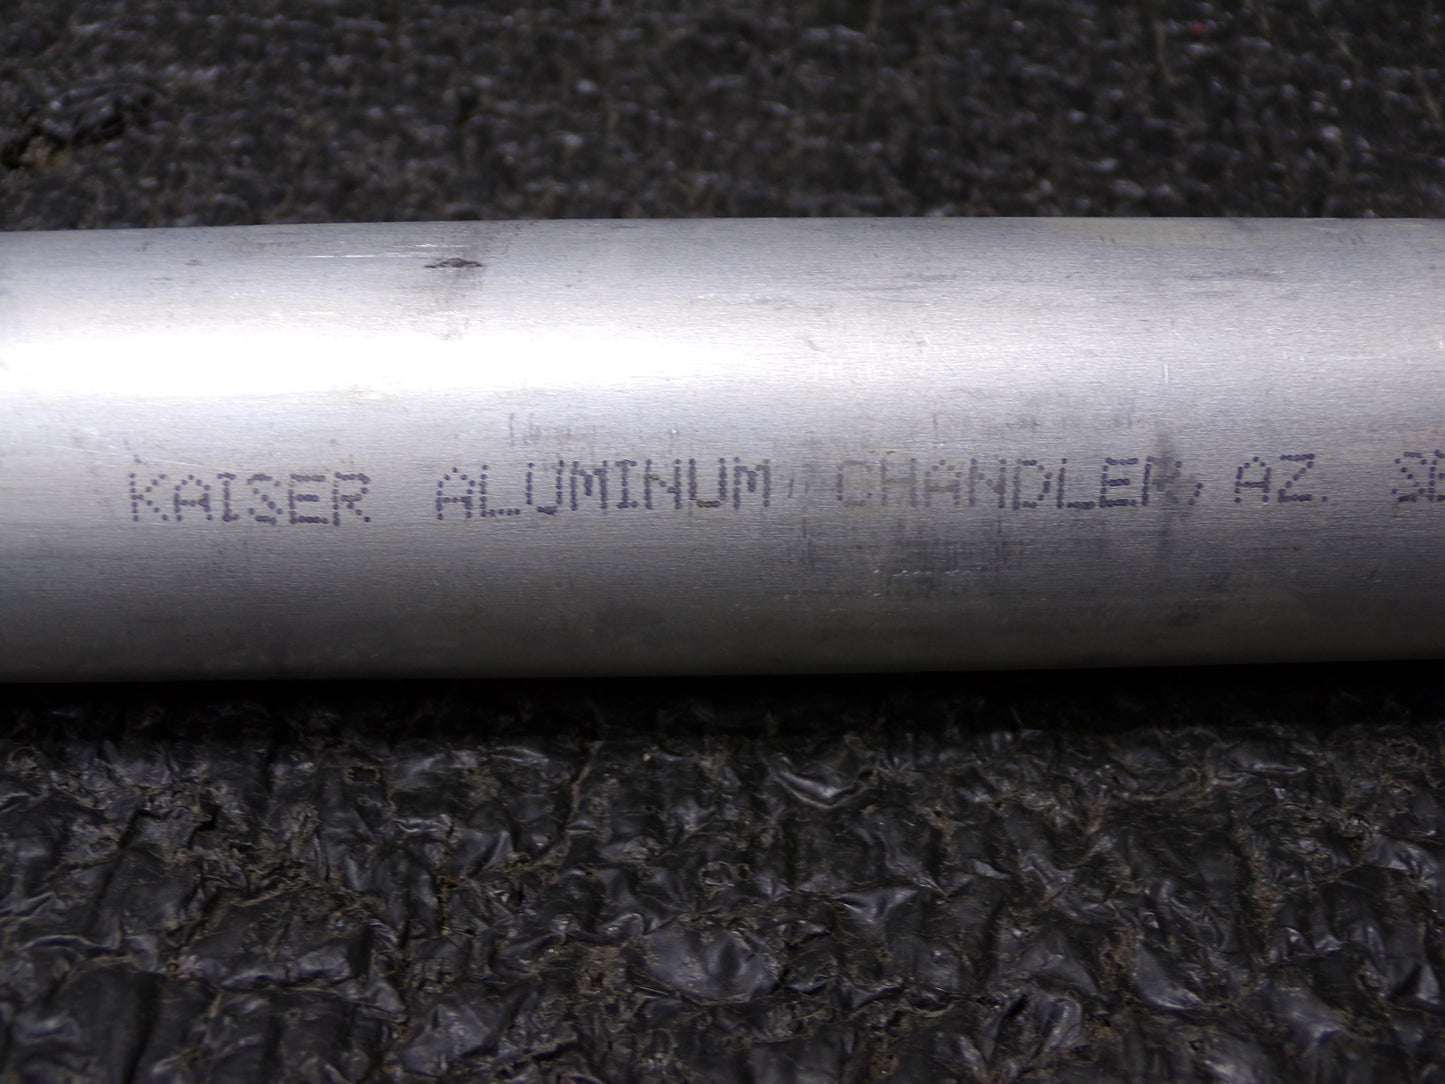 Kaiser Aluminum Tube, Seamless, 1.500" O.D. x 0.049" Wall, 13" Length, 6061 T-6 (CR00425-BT17)